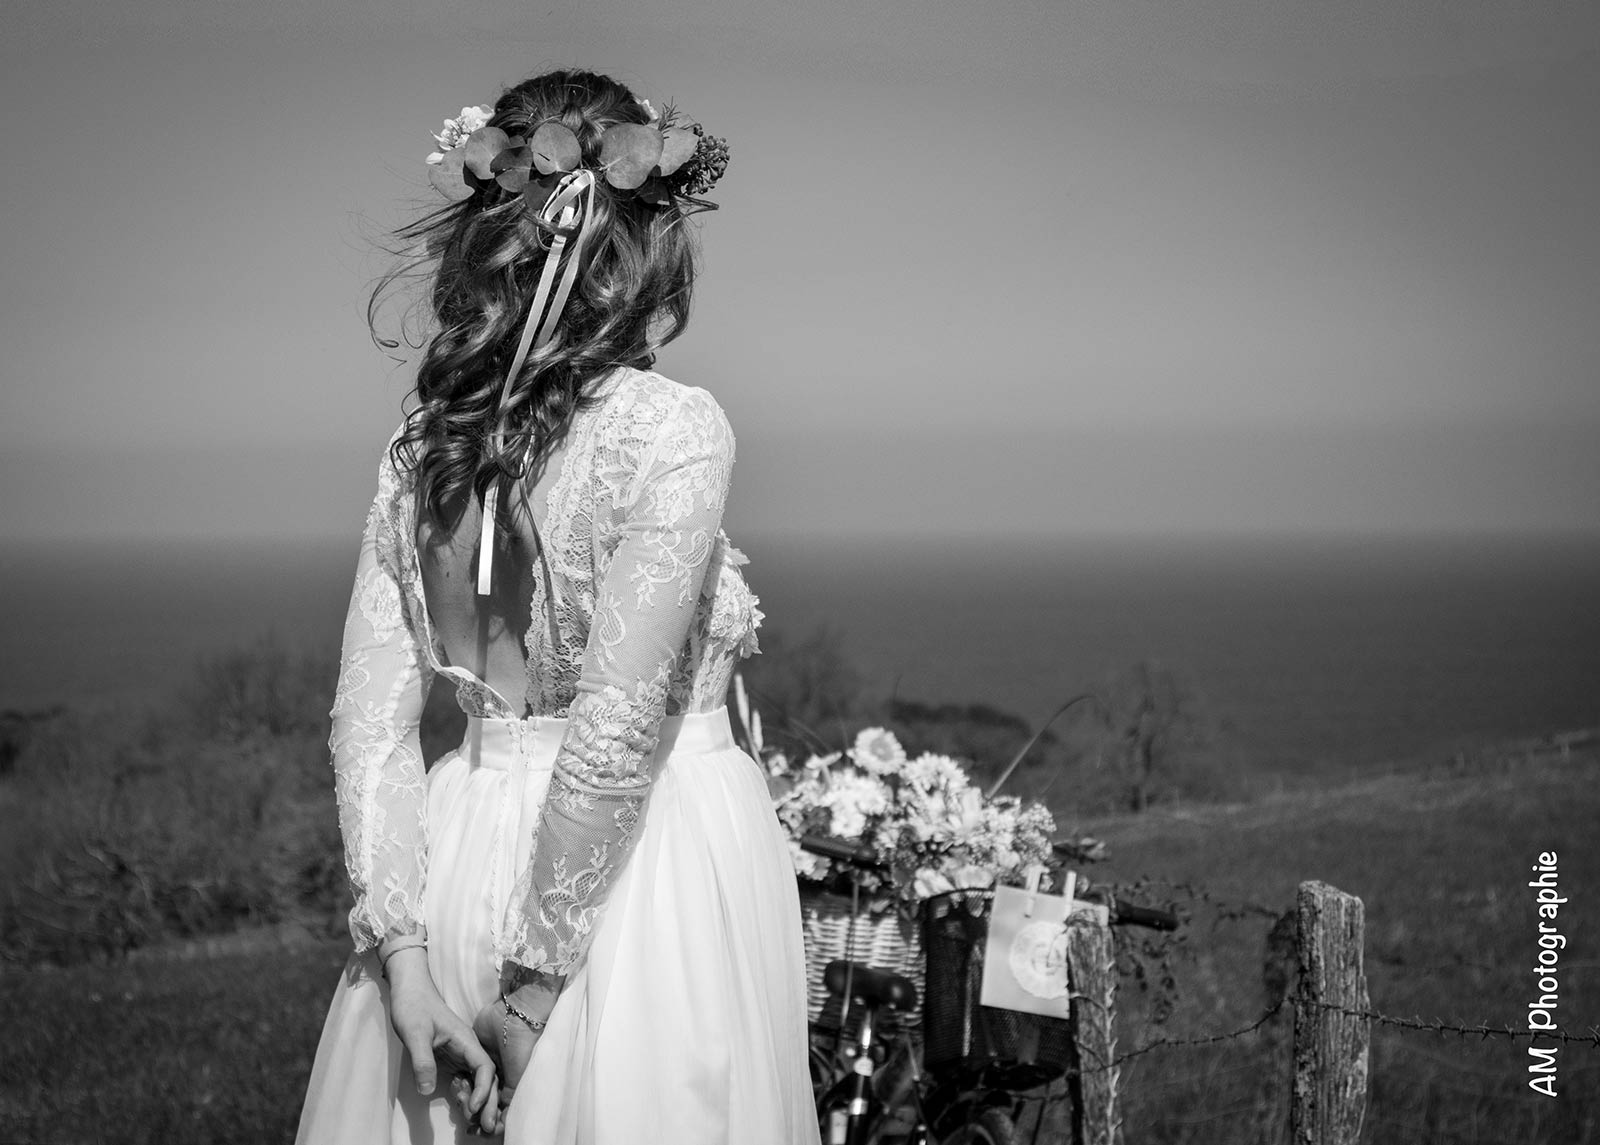 Robe Amaïa par La petite mariée de sopite créateur de robes de mariées au Pays basque